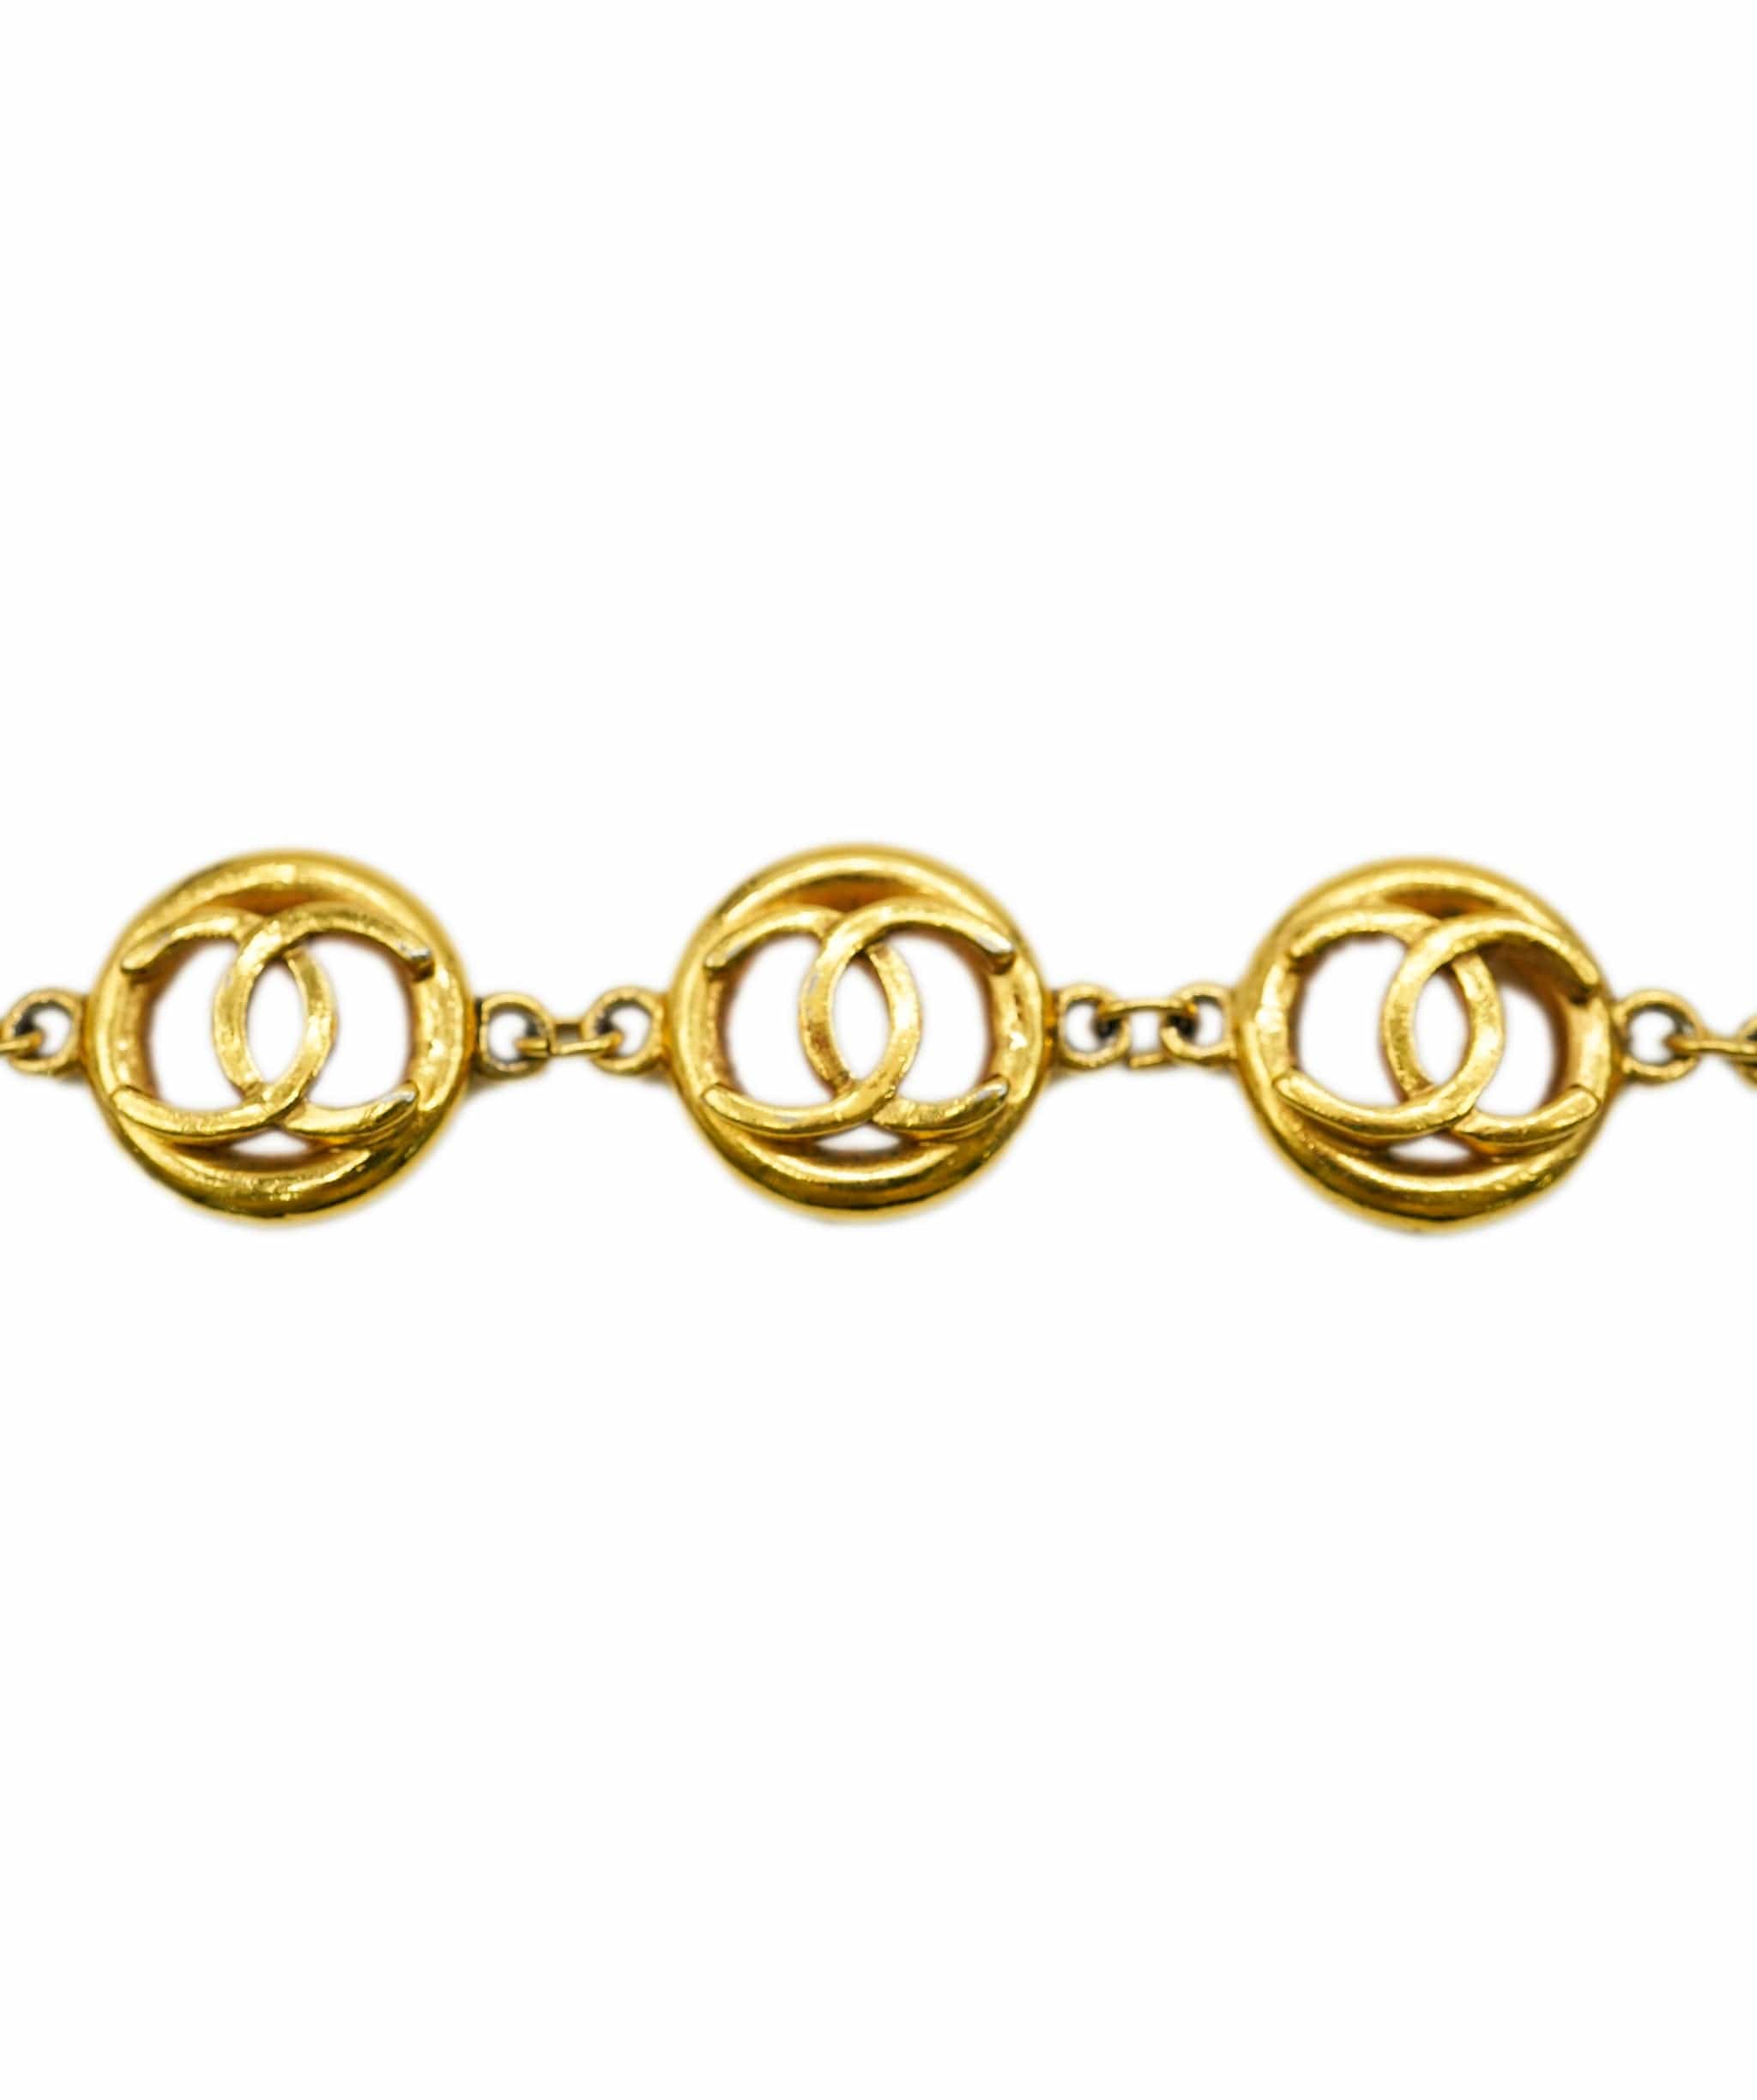 Chanel Chanel vintage bracelet gold cut out 5 cc motif AVC1878